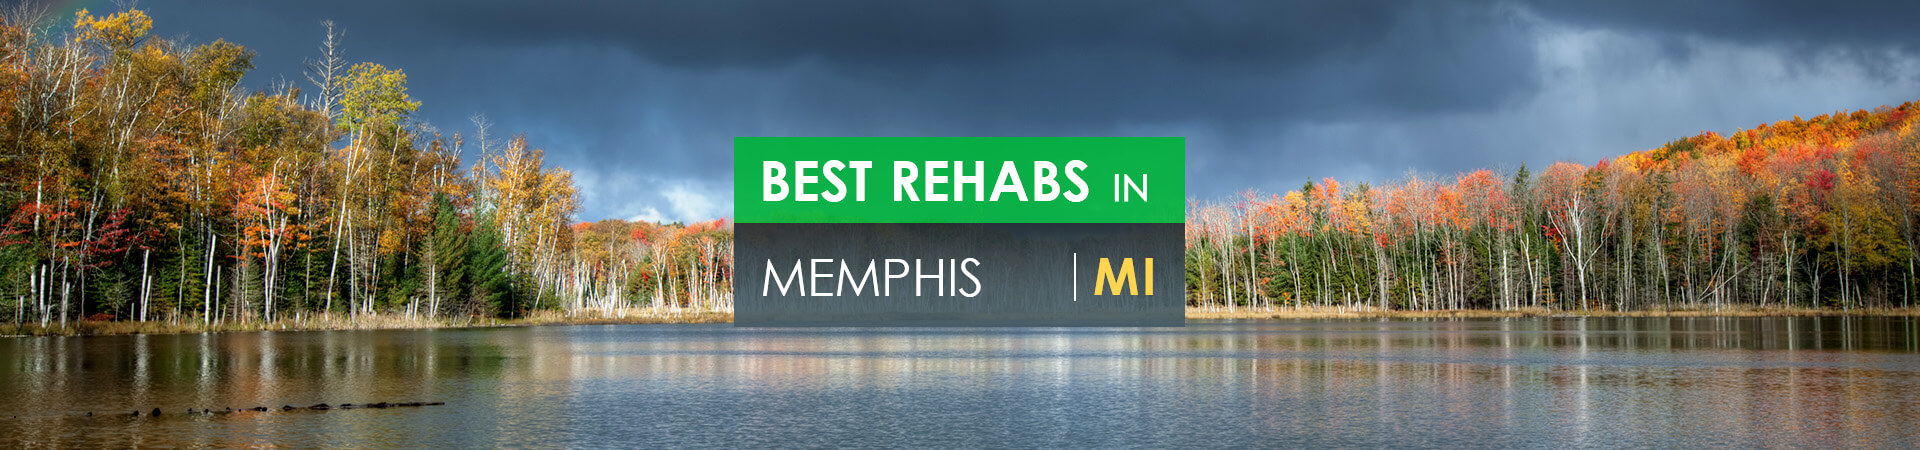 Best rehabs in Memphis, MI